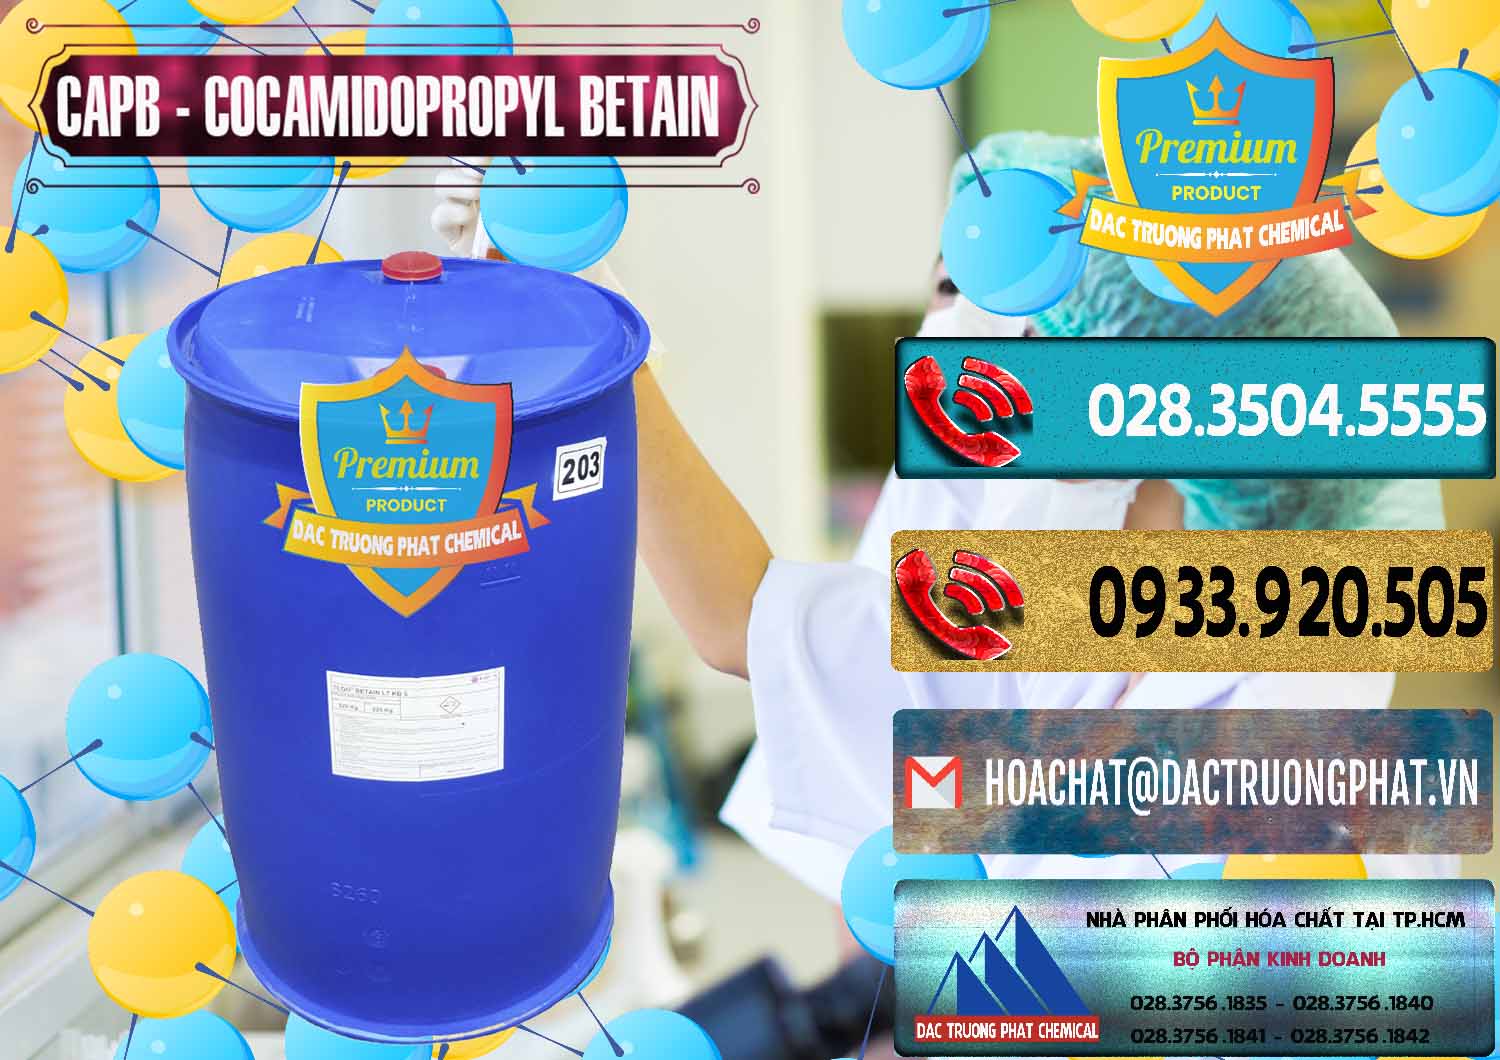 Công ty chuyên phân phối - bán Cocamidopropyl Betaine - CAPB Tego Indonesia - 0327 - Cty cung cấp & phân phối hóa chất tại TP.HCM - hoachatdetnhuom.com